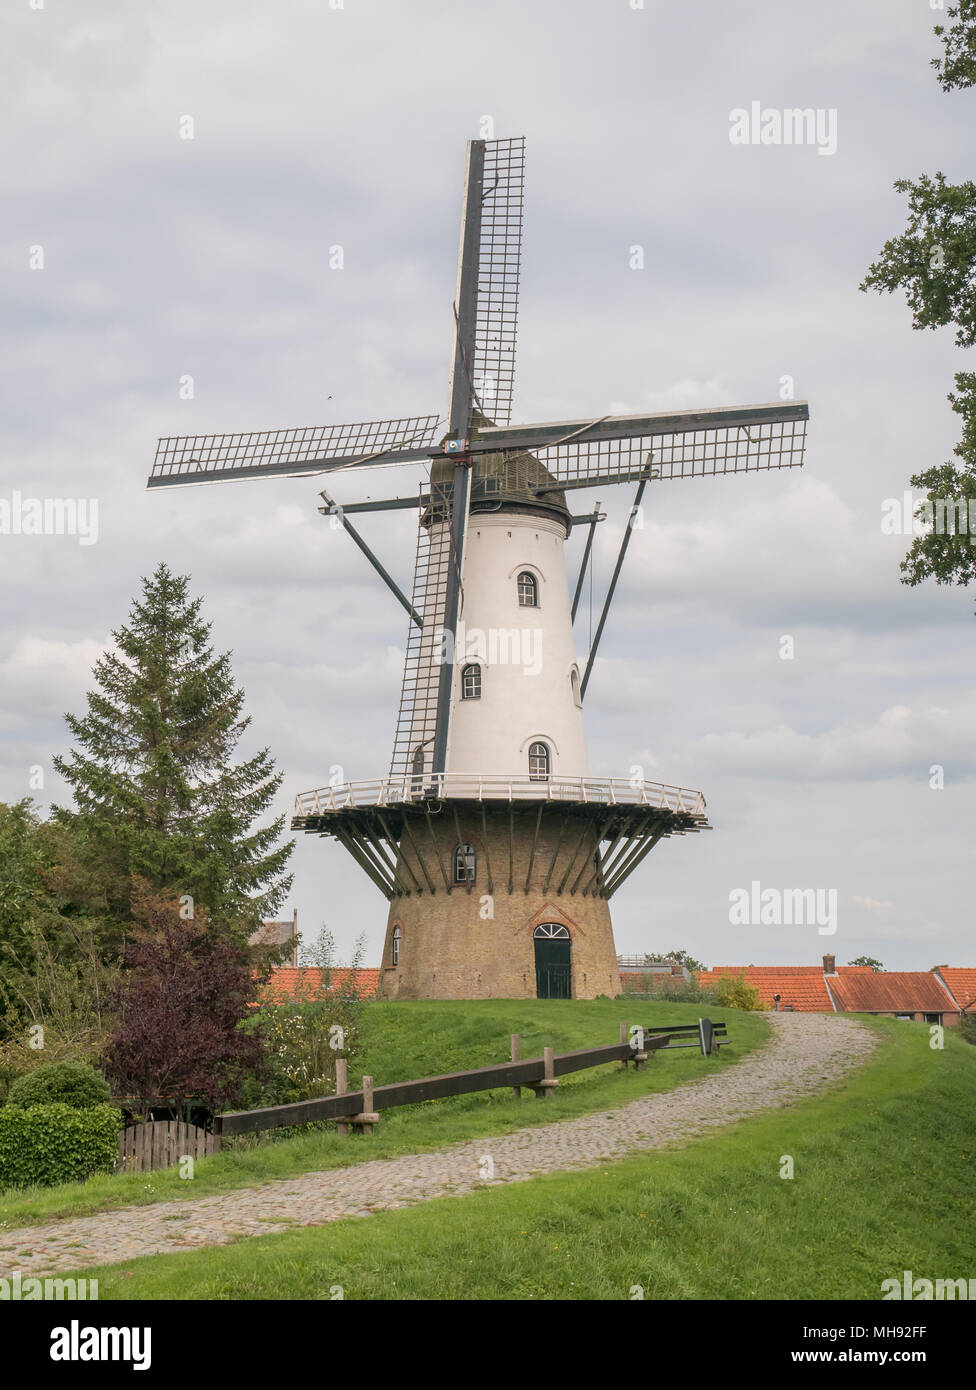 Typical Dutch stage tower windmill 'De Witte Juffer' in IJzendijke - Zeelandic Flanders Stock Photo